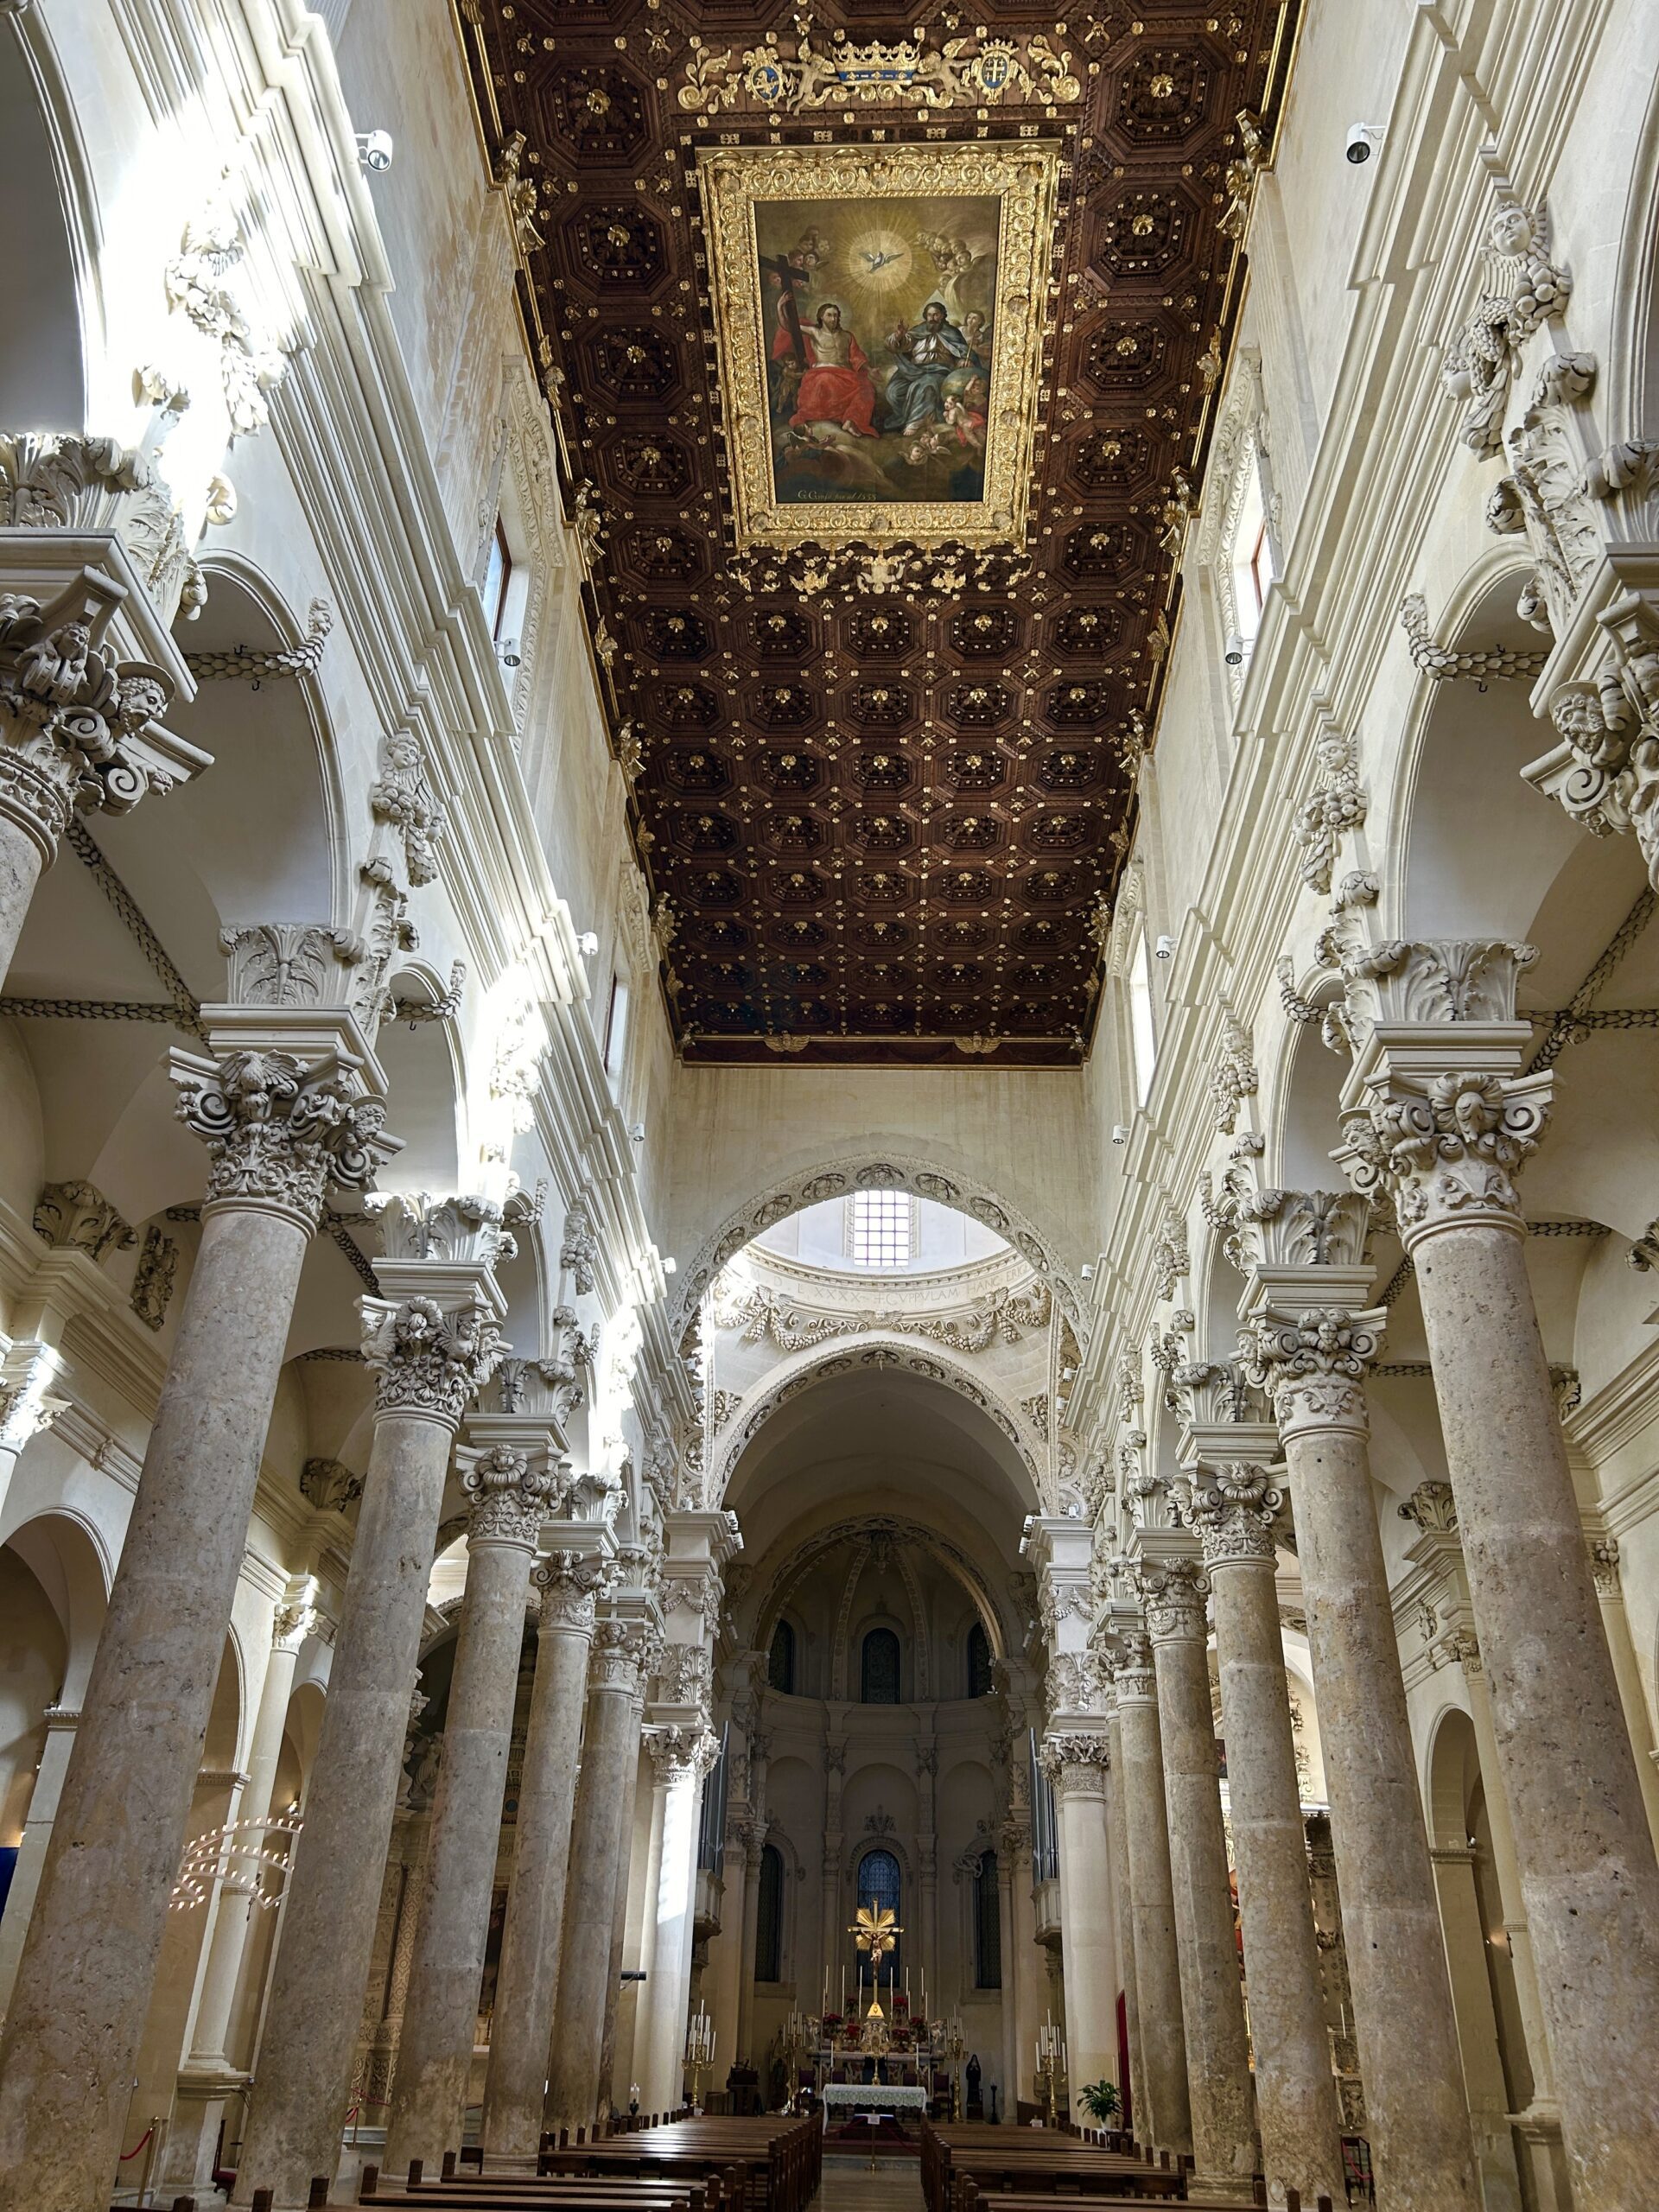 the ceiling of basicilia di santa croce lecce italy